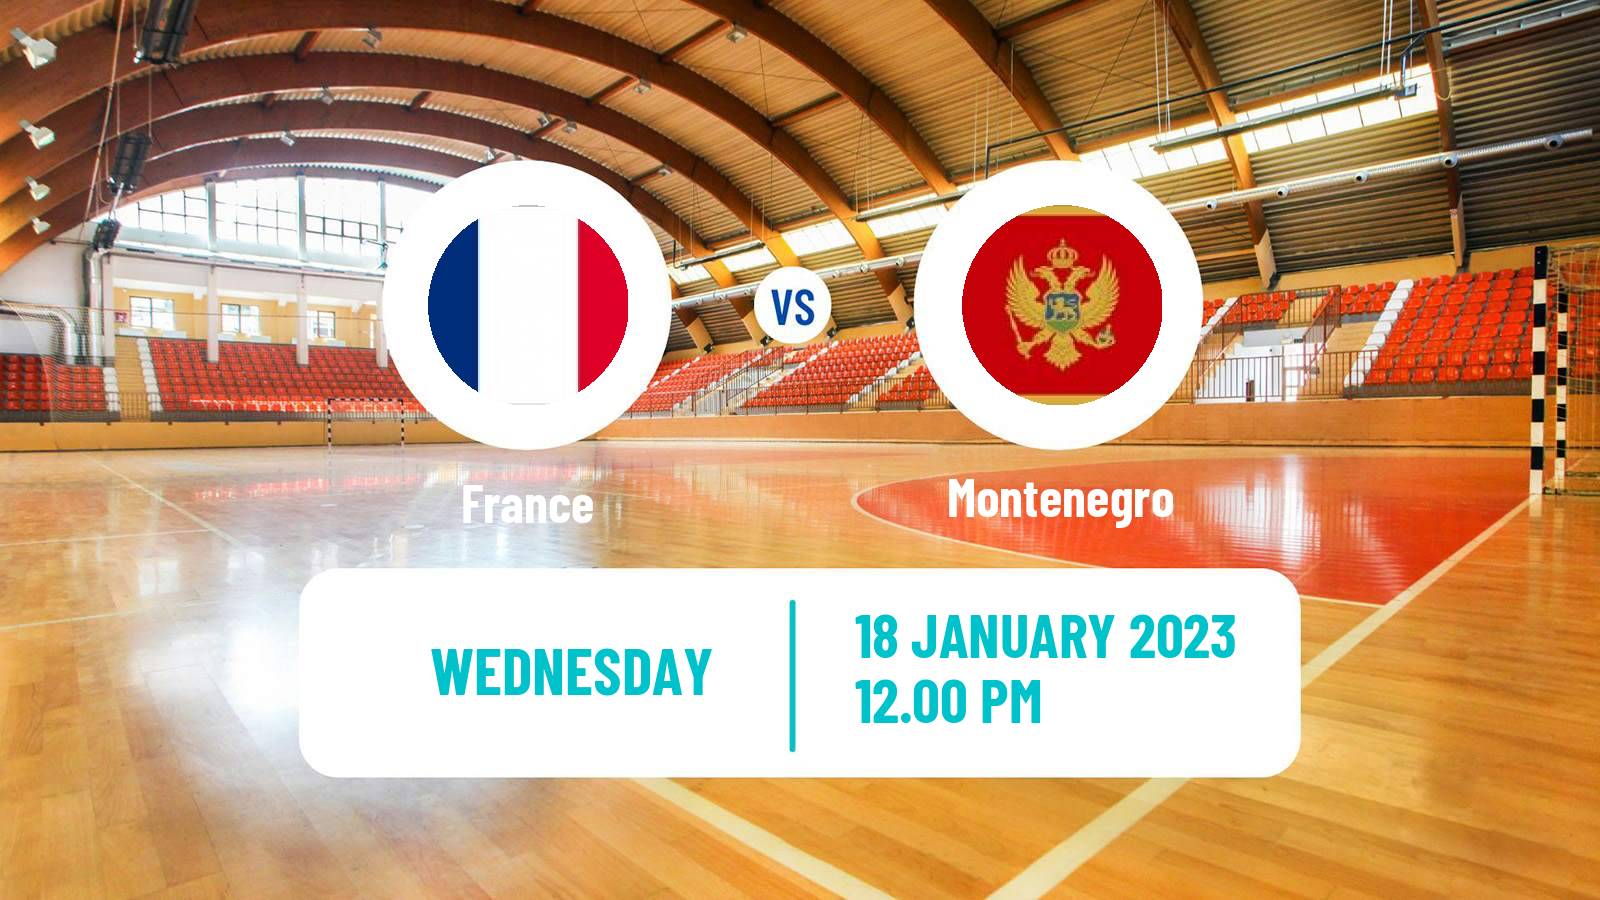 Handball Handball World Championship France - Montenegro